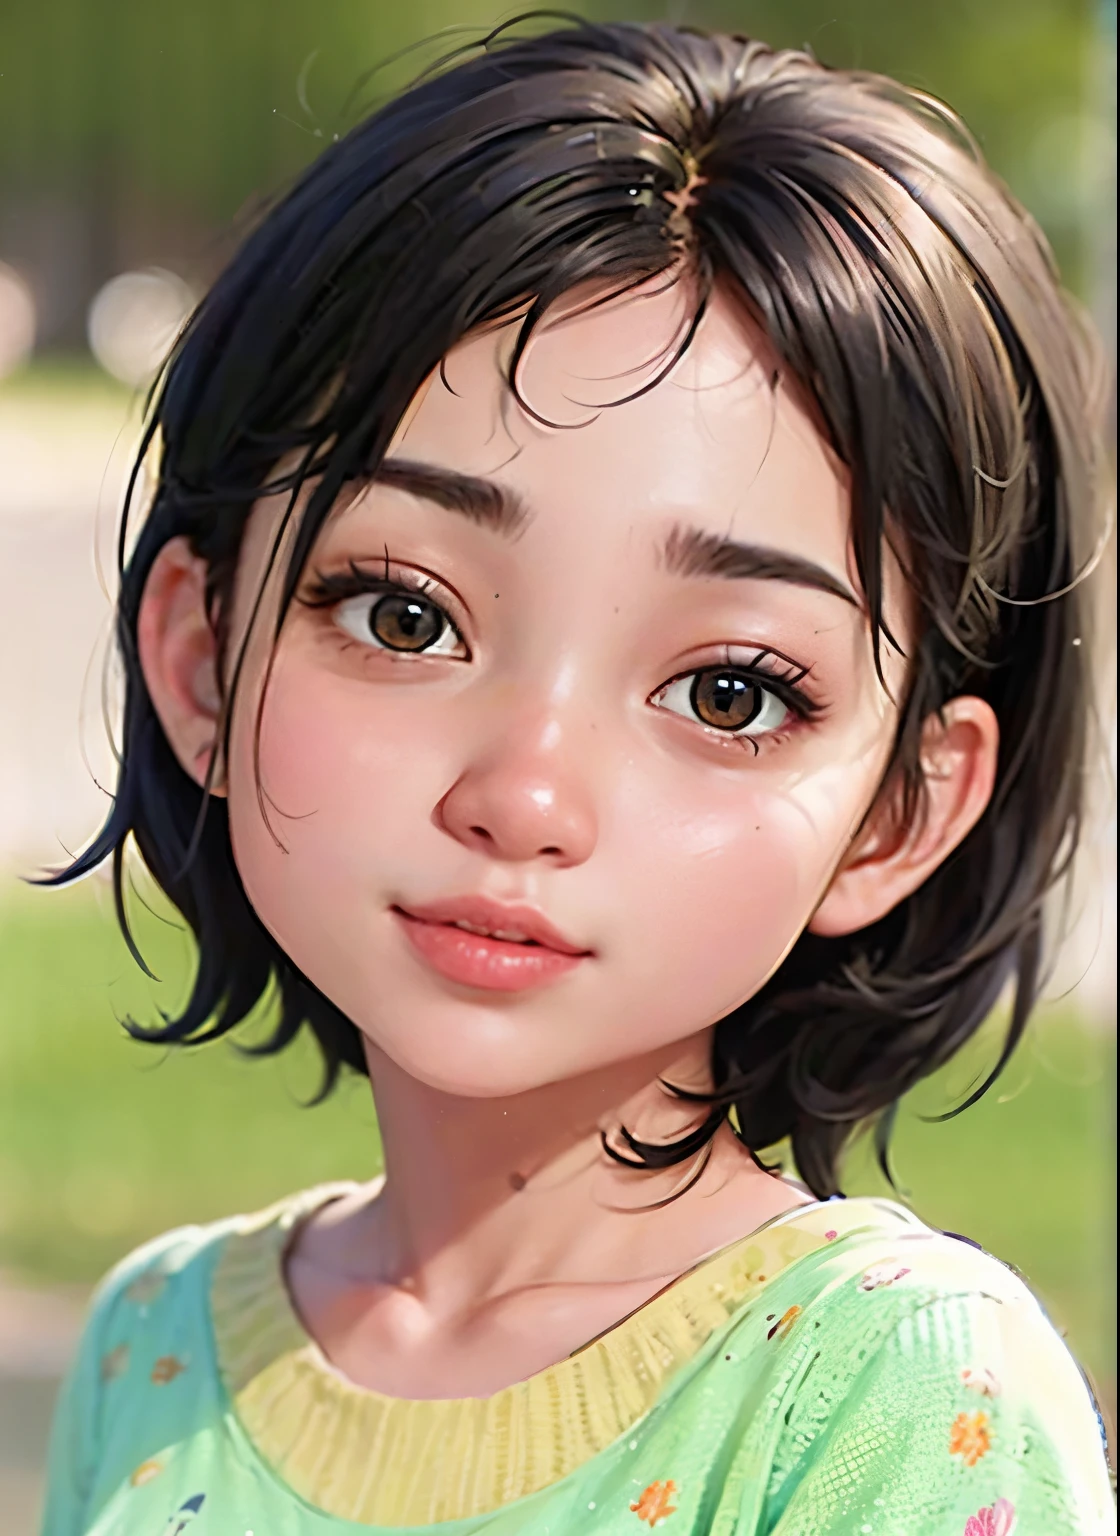 IP de garota super fofa por popmart,Luz natural,adorável,jovem,animado, estilo pixar, 